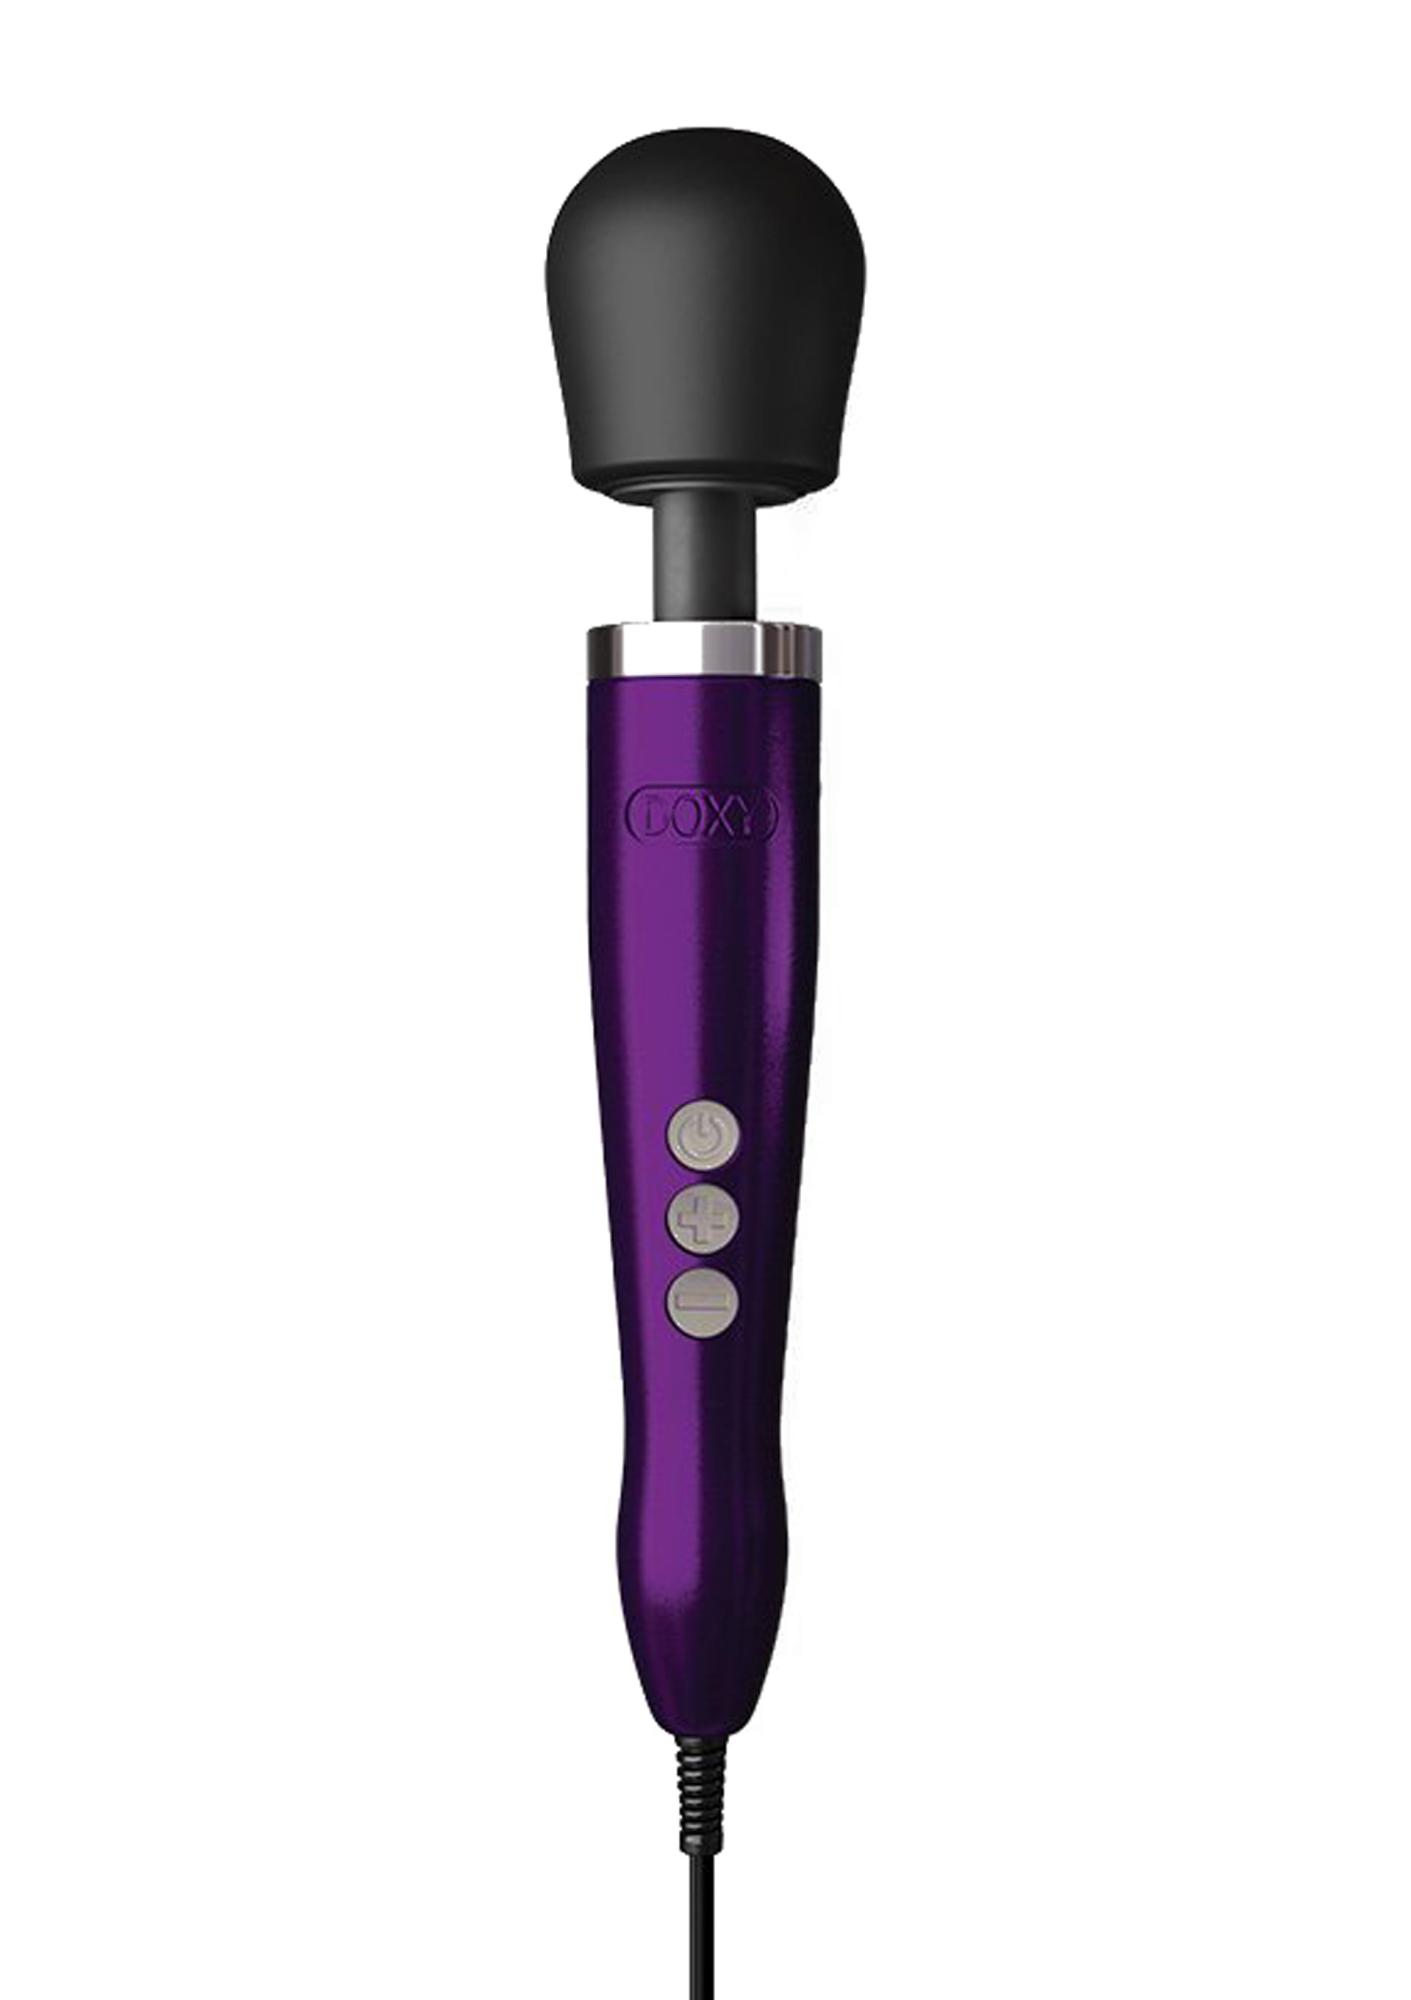 Doxy Die Cast - вибратор микрофон в алюминиевом корпусе, 34х6 см (фиолетовый) - фото 1